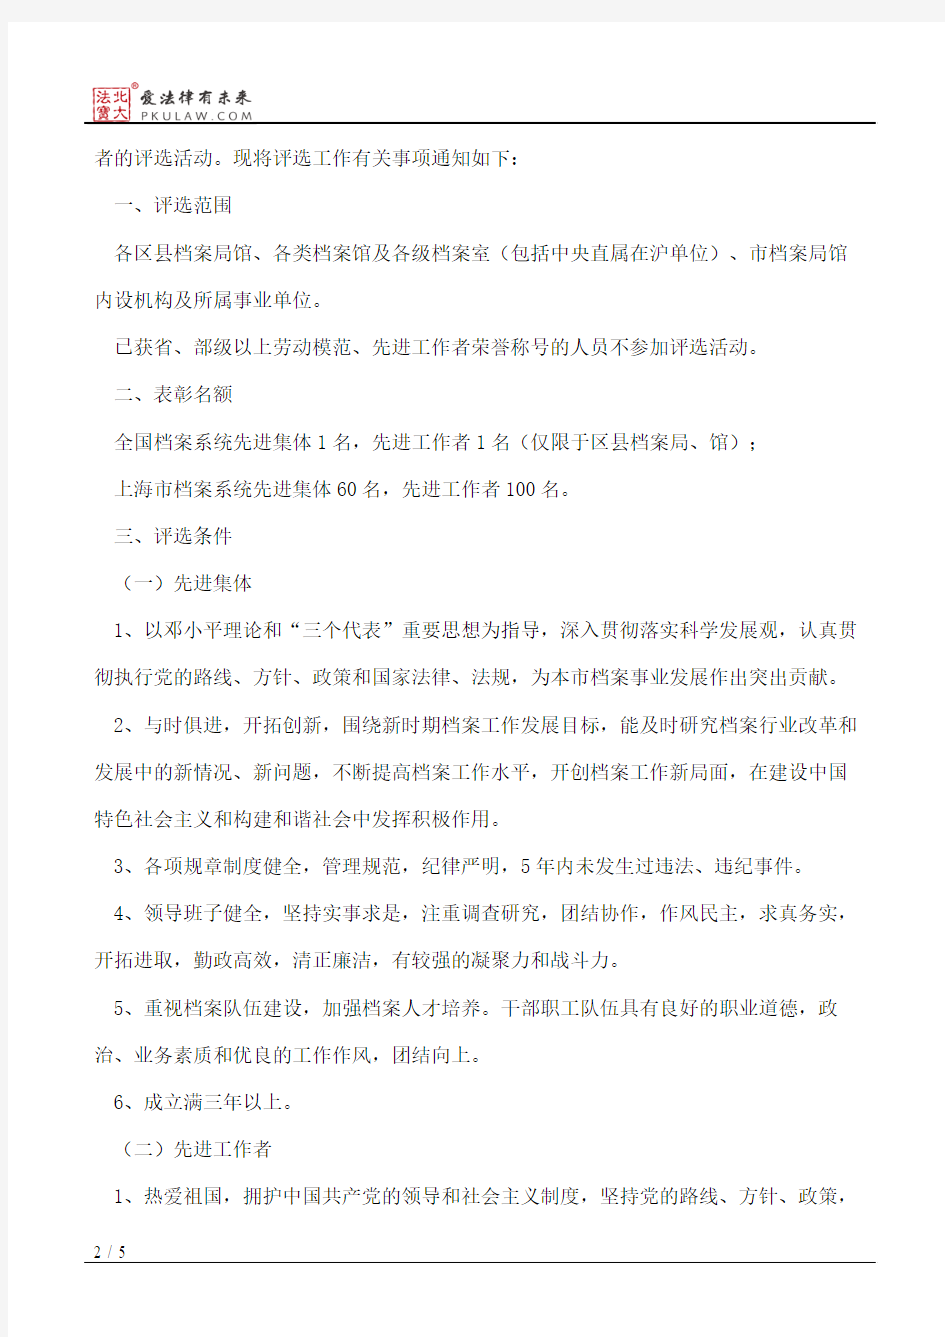 上海市档案局、上海市人力资源和社会保障局、上海市公务员局关于